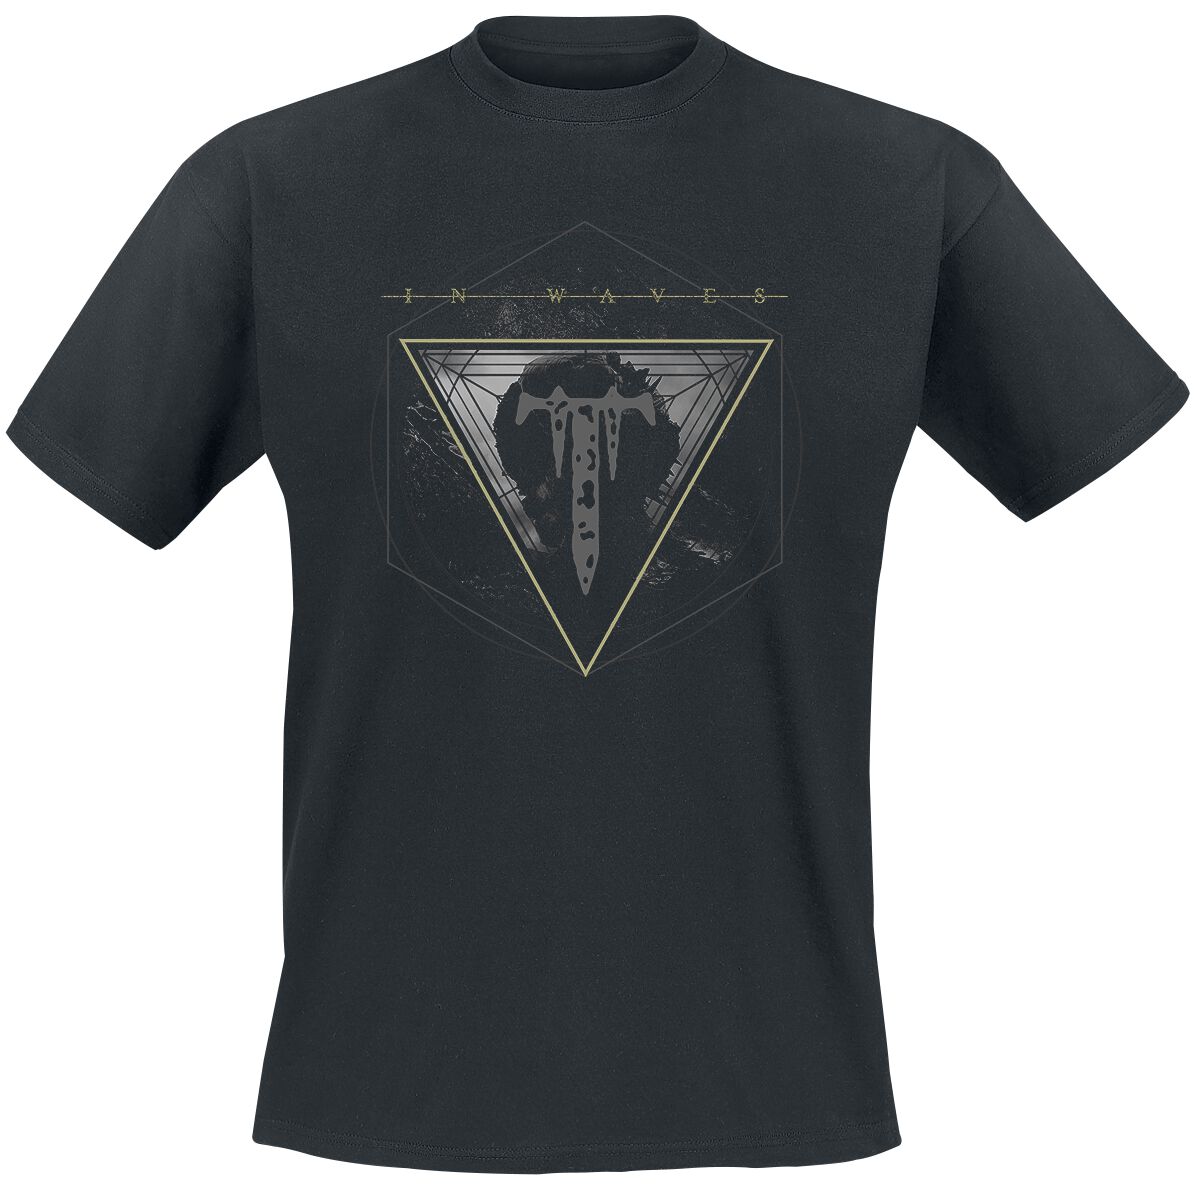 Trivium T-Shirt - In Waves Remix - L bis XXL - für Männer - Größe XXL - schwarz  - Lizenziertes Merchandise!